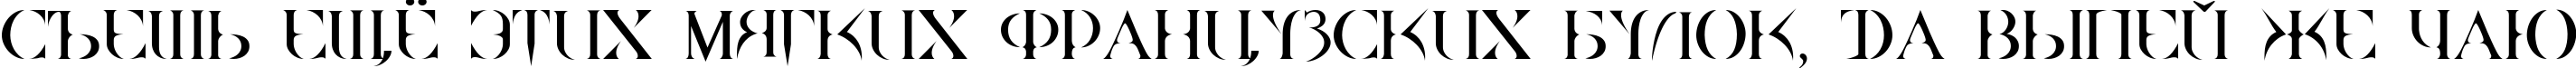 Пример написания шрифтом Quake Cyr текста на русском